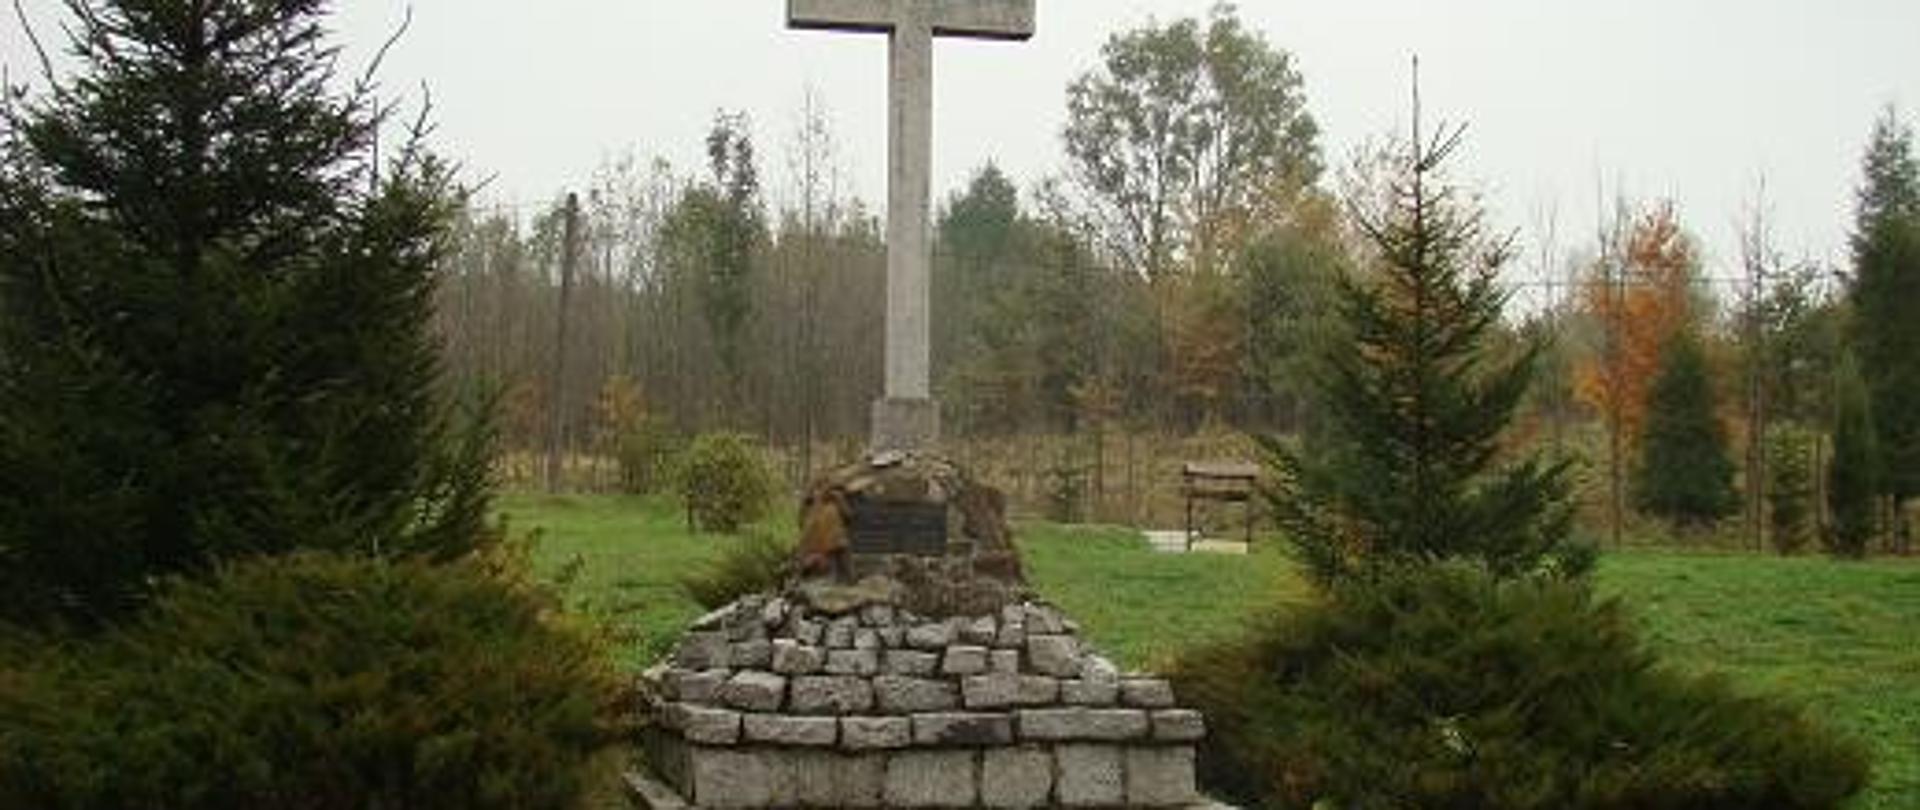 widoczny pomnik upamiętniający wydarzenie krzyż schodki po lewej i prawej widoczne nasadzenia w tle las młodnik widoczna studnia